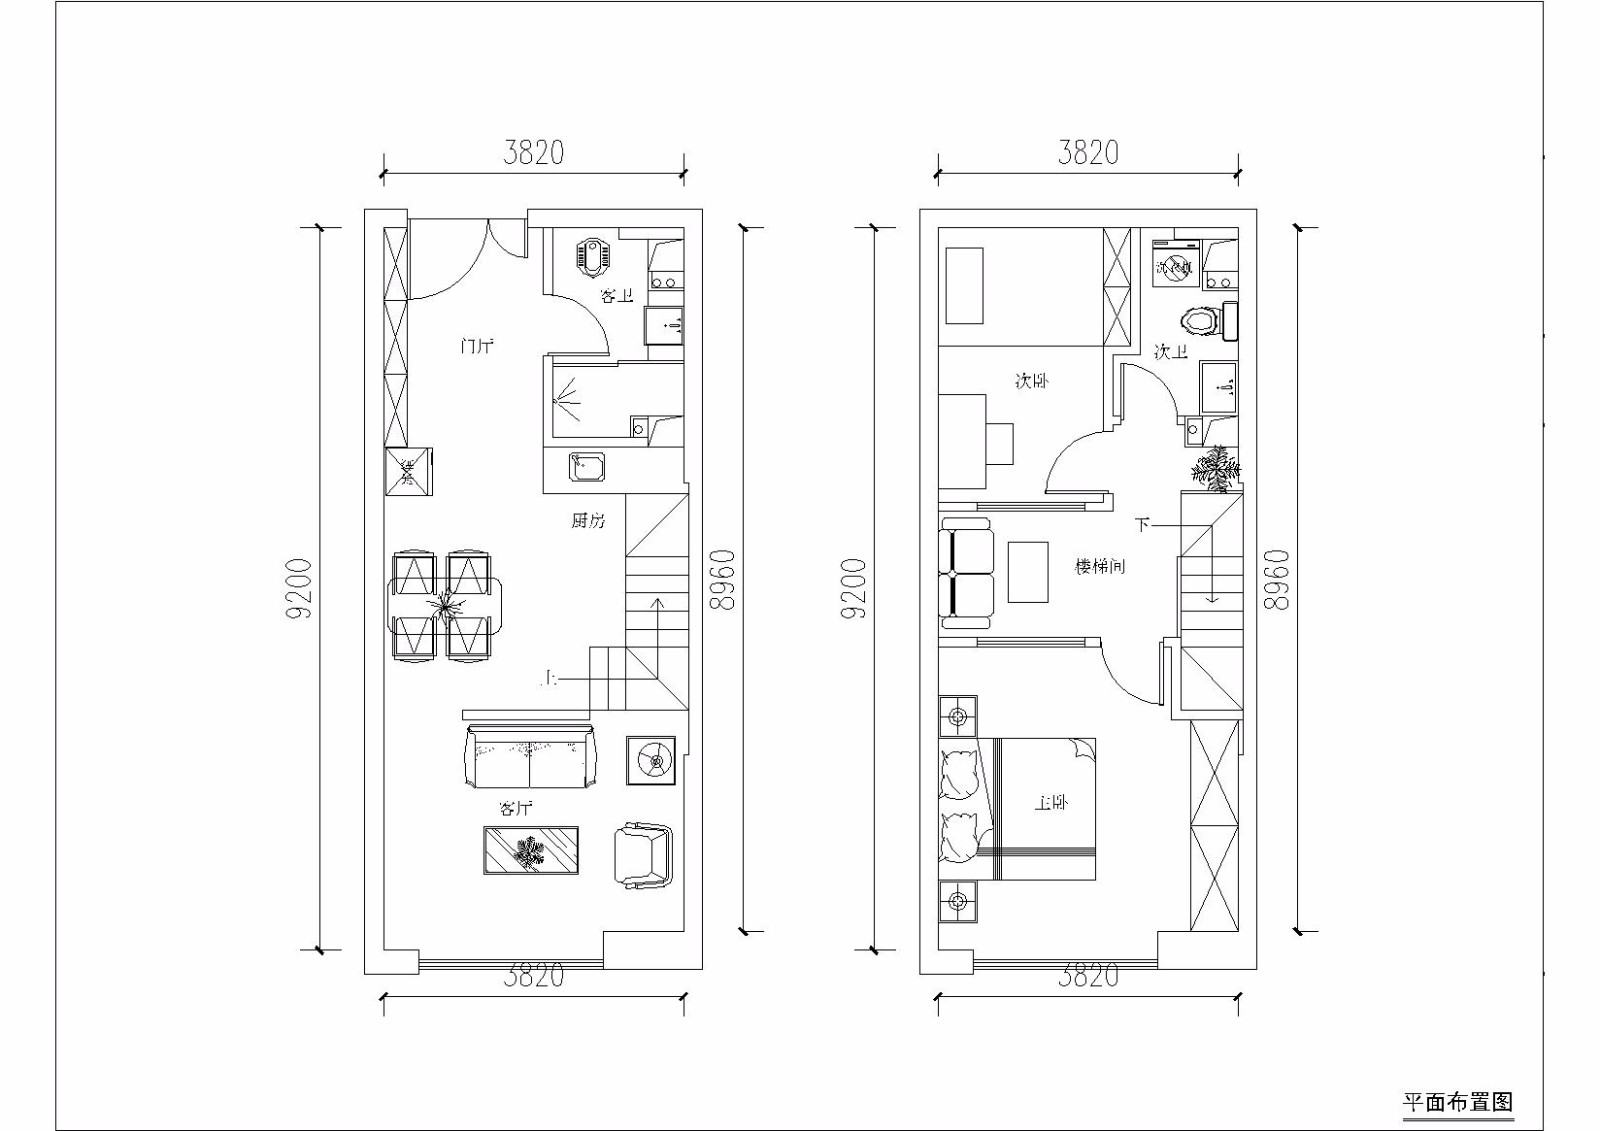 全屋户型图赞一下:0现代简约风小型loft公寓,空间利用,美观实用$120